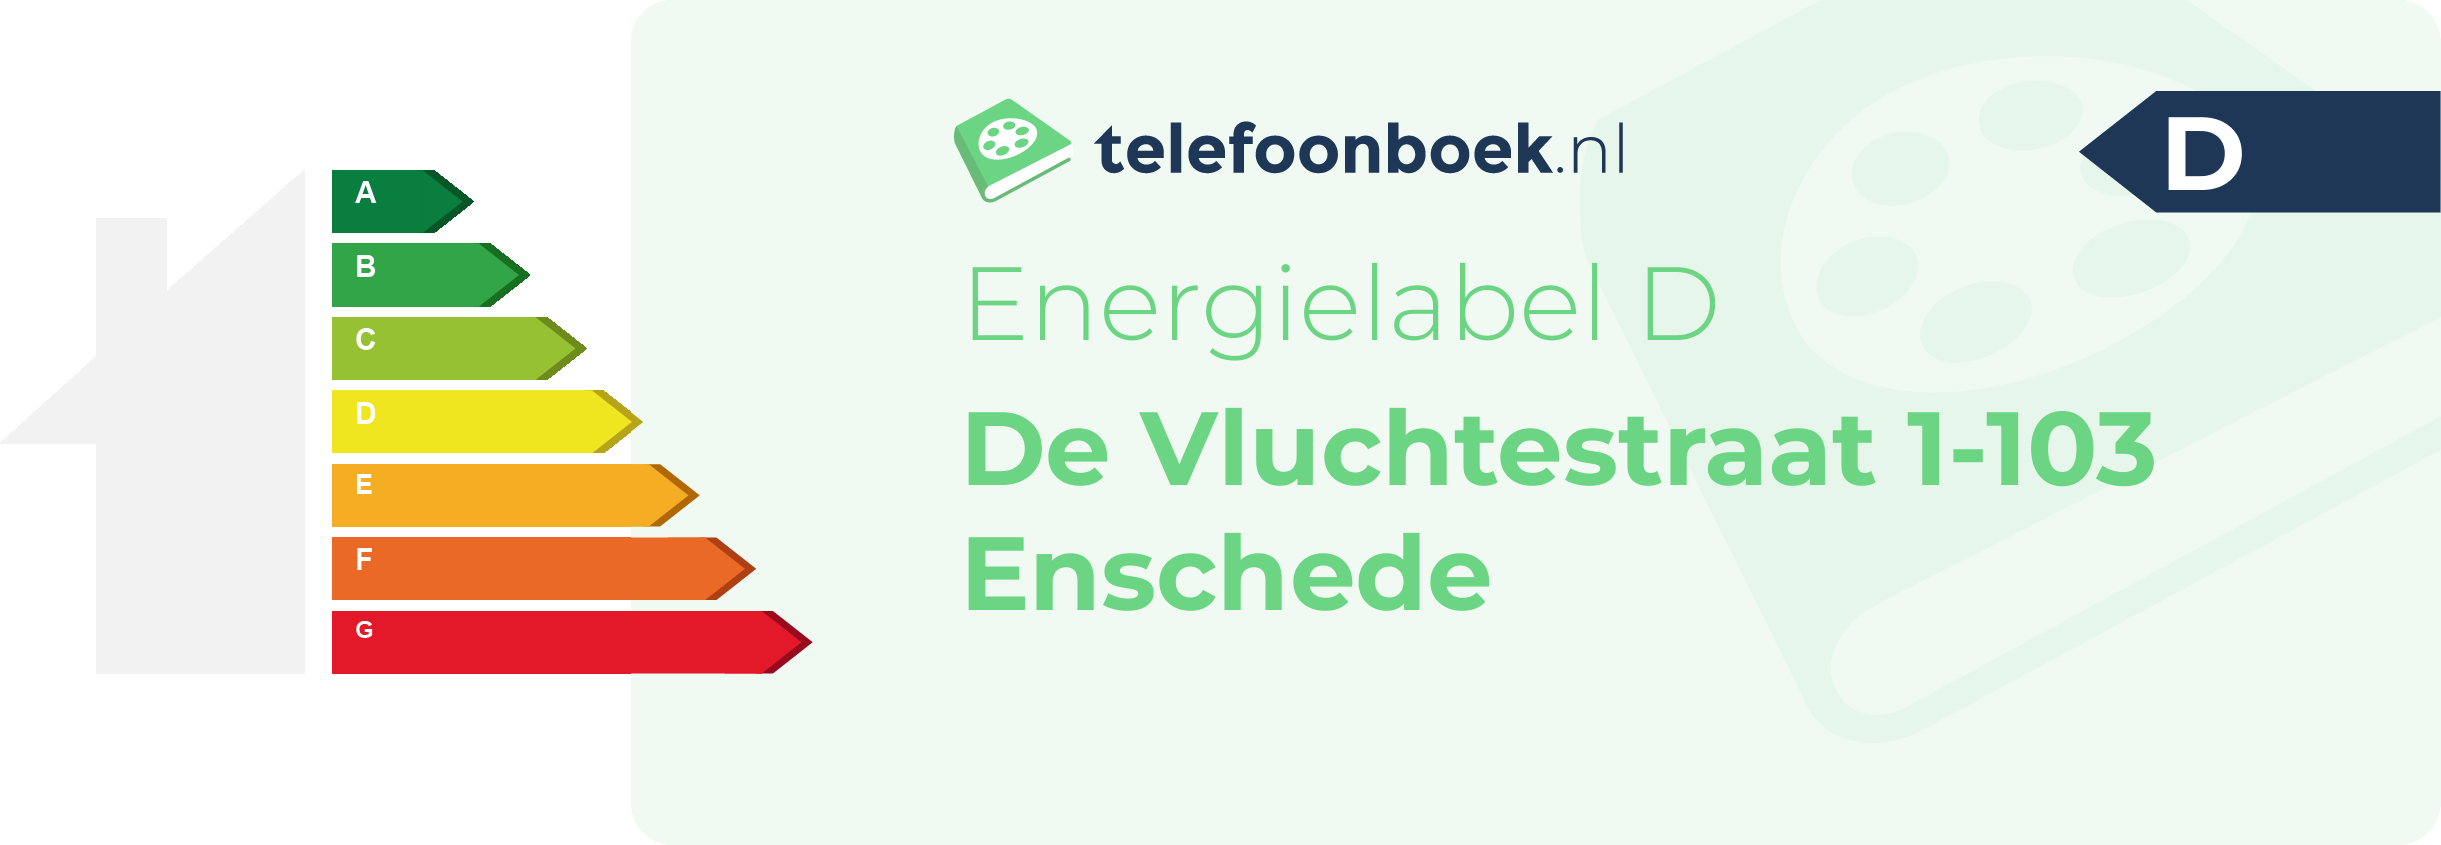 Energielabel De Vluchtestraat 1-103 Enschede